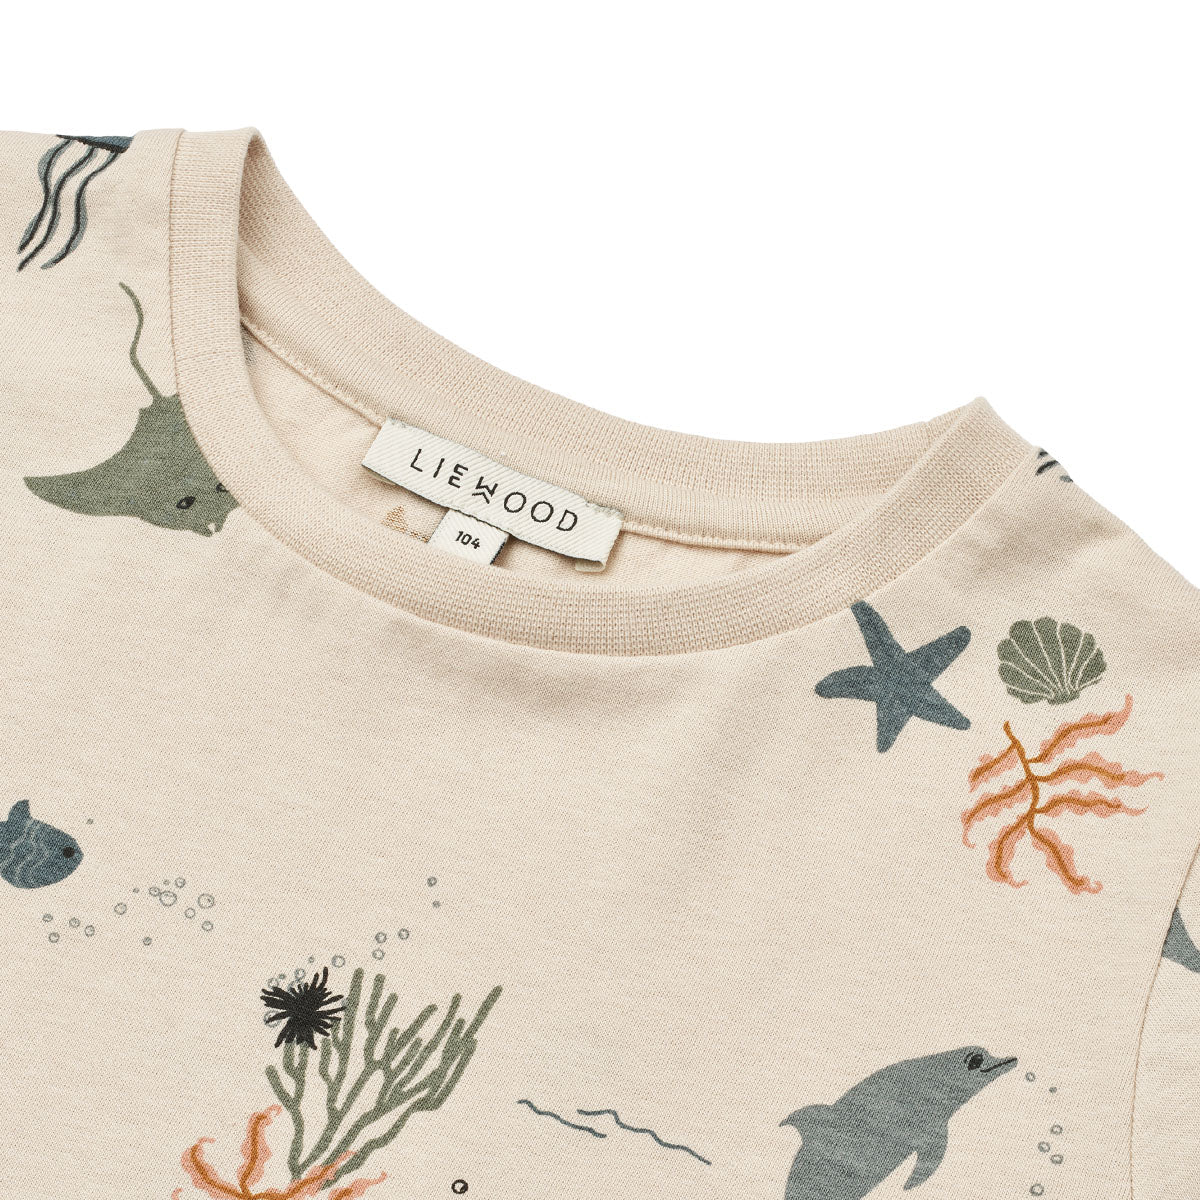 Verrijk de garderobe van je kind met dit schattige apia T-shirt in de kleur sea creature/sandy van het merk Liewood. Dit stijlvolle shirtje ziet er niet alleen geweldig uit, maar zit ook heel erg comfortabel! 